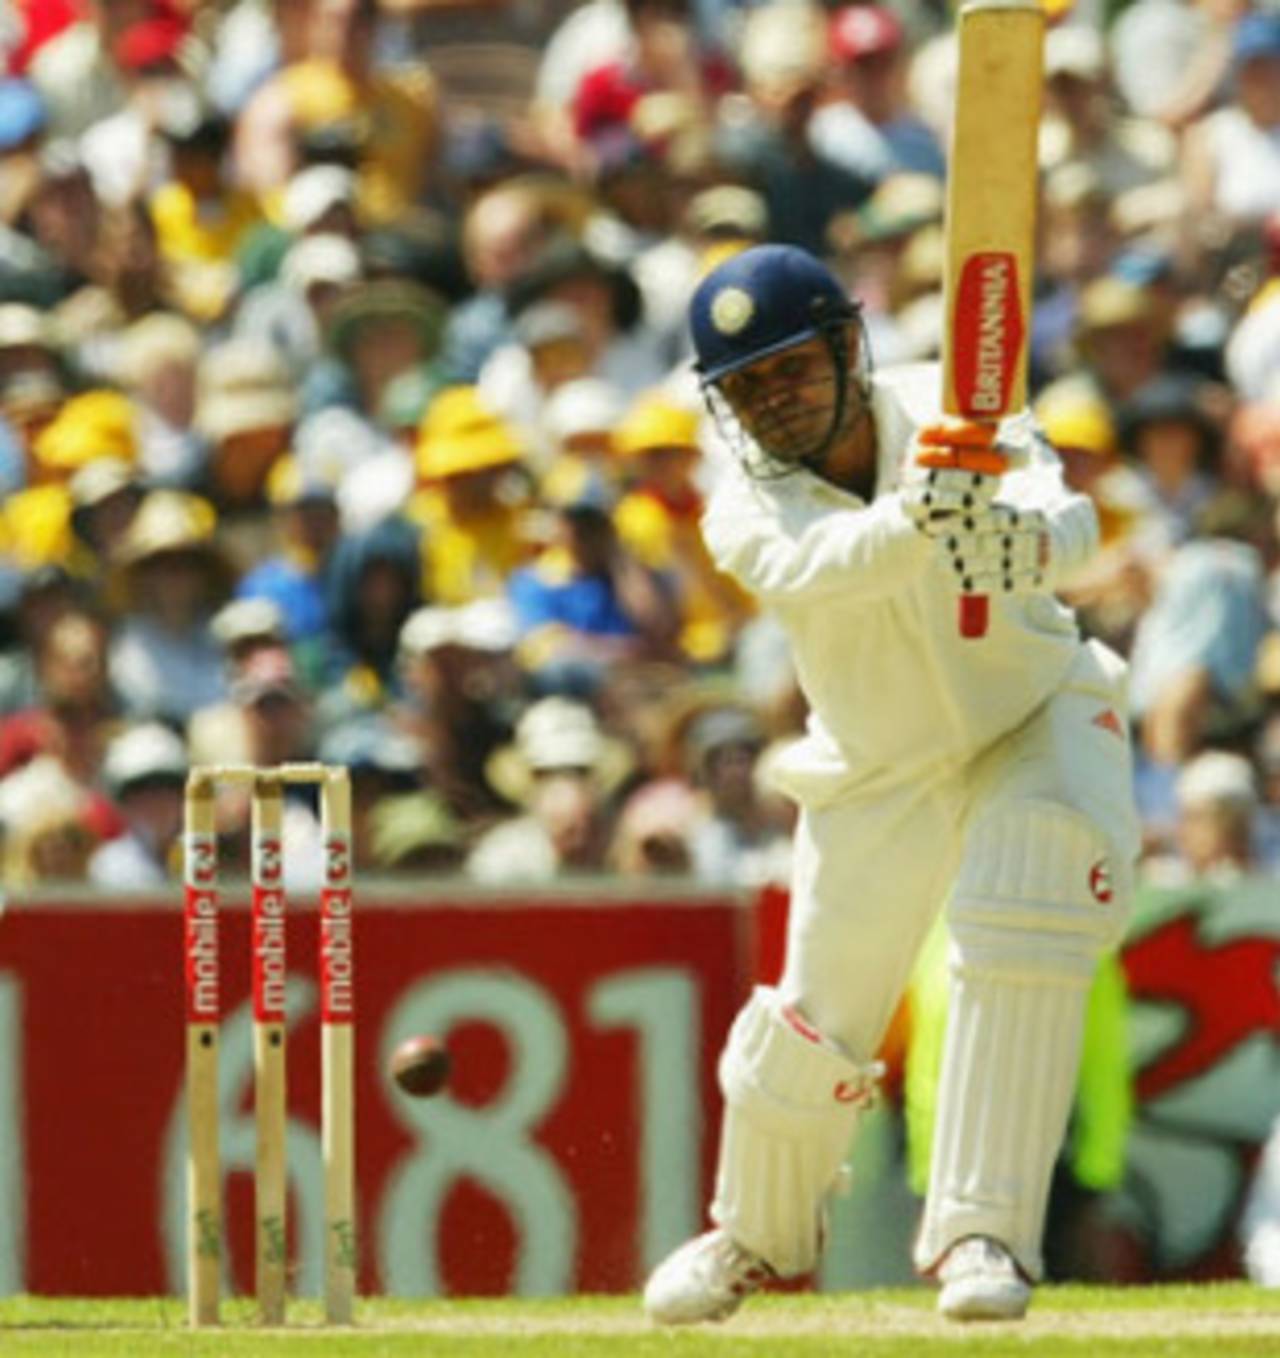 Look who's doing the hitting! Virender Sehwag goes berserk, Australia v India, 3rd Test, Melbourne, 1st day, December 26, 2003